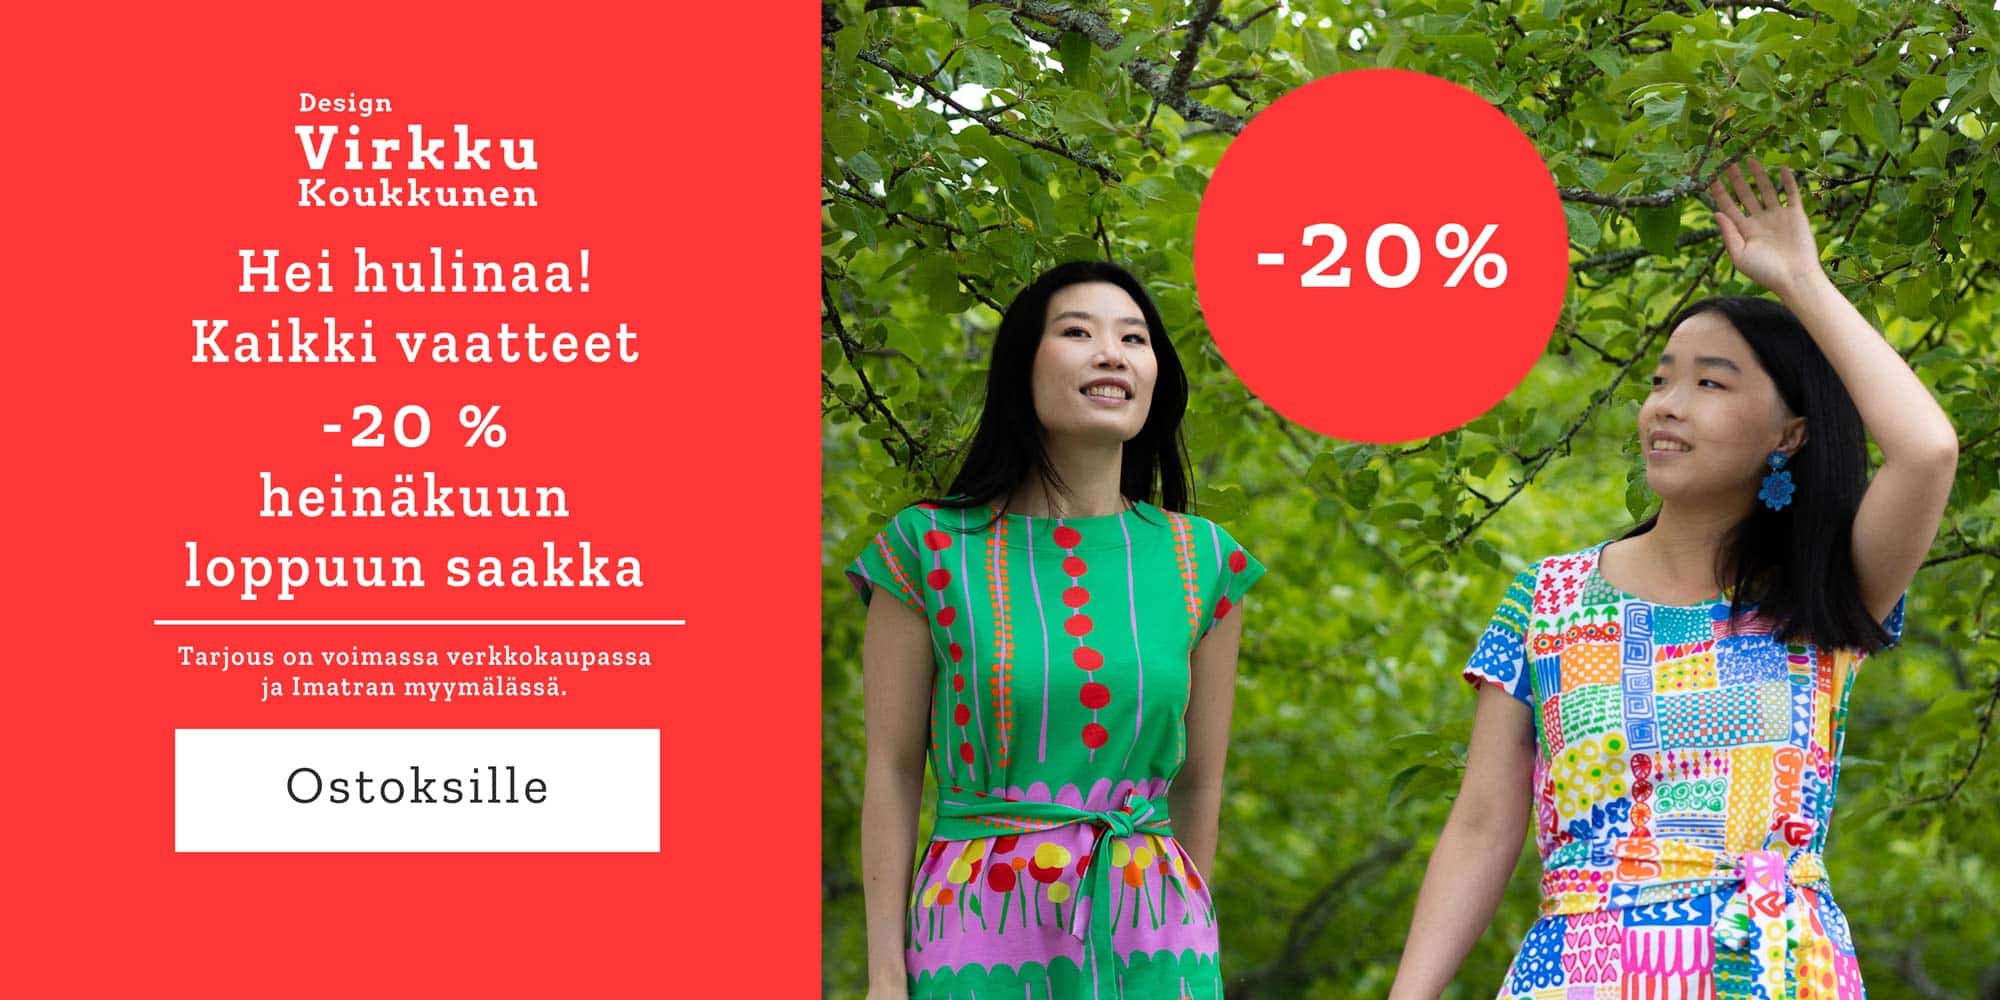 Kaikki vaatteet -20 % heinäkuun loppuun saakka Tarjous on voimassa verkkokaupassa ja Imatran myymälässä.